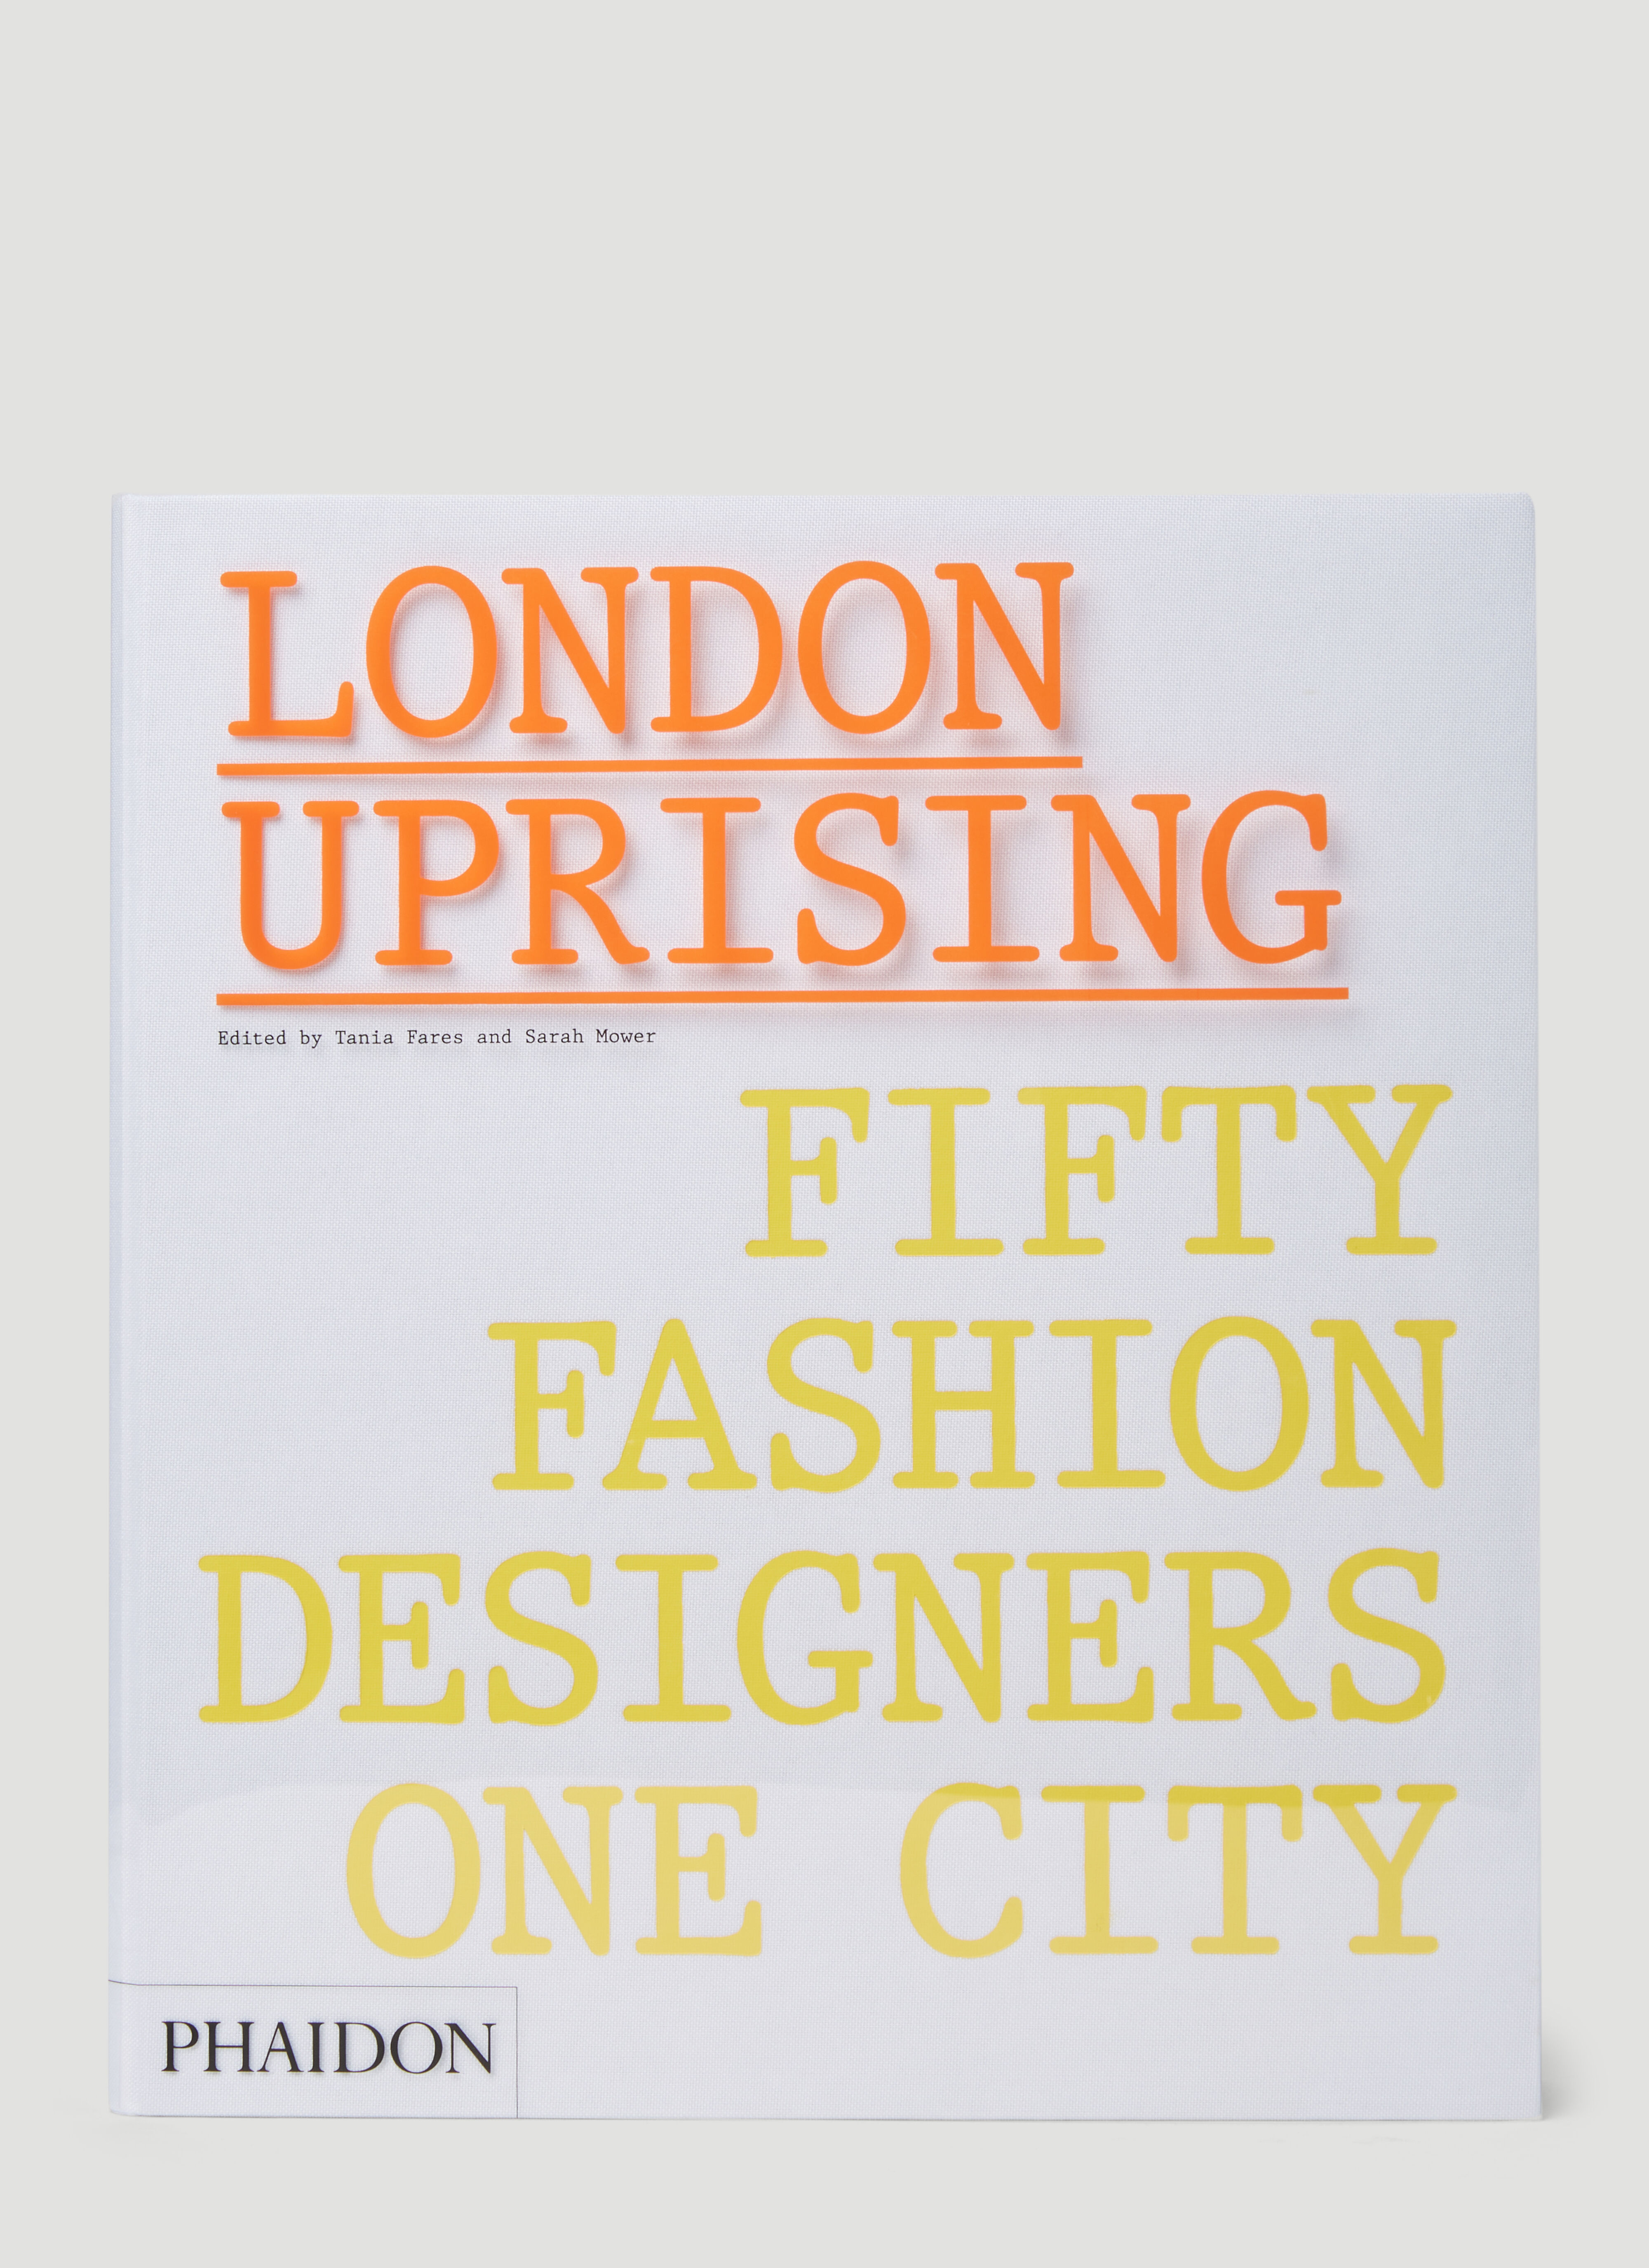 Phaidon 『ロンドンアップライジング: 50 人のファッション デザイナー、1 つの都市』 ベージュ phd0553013